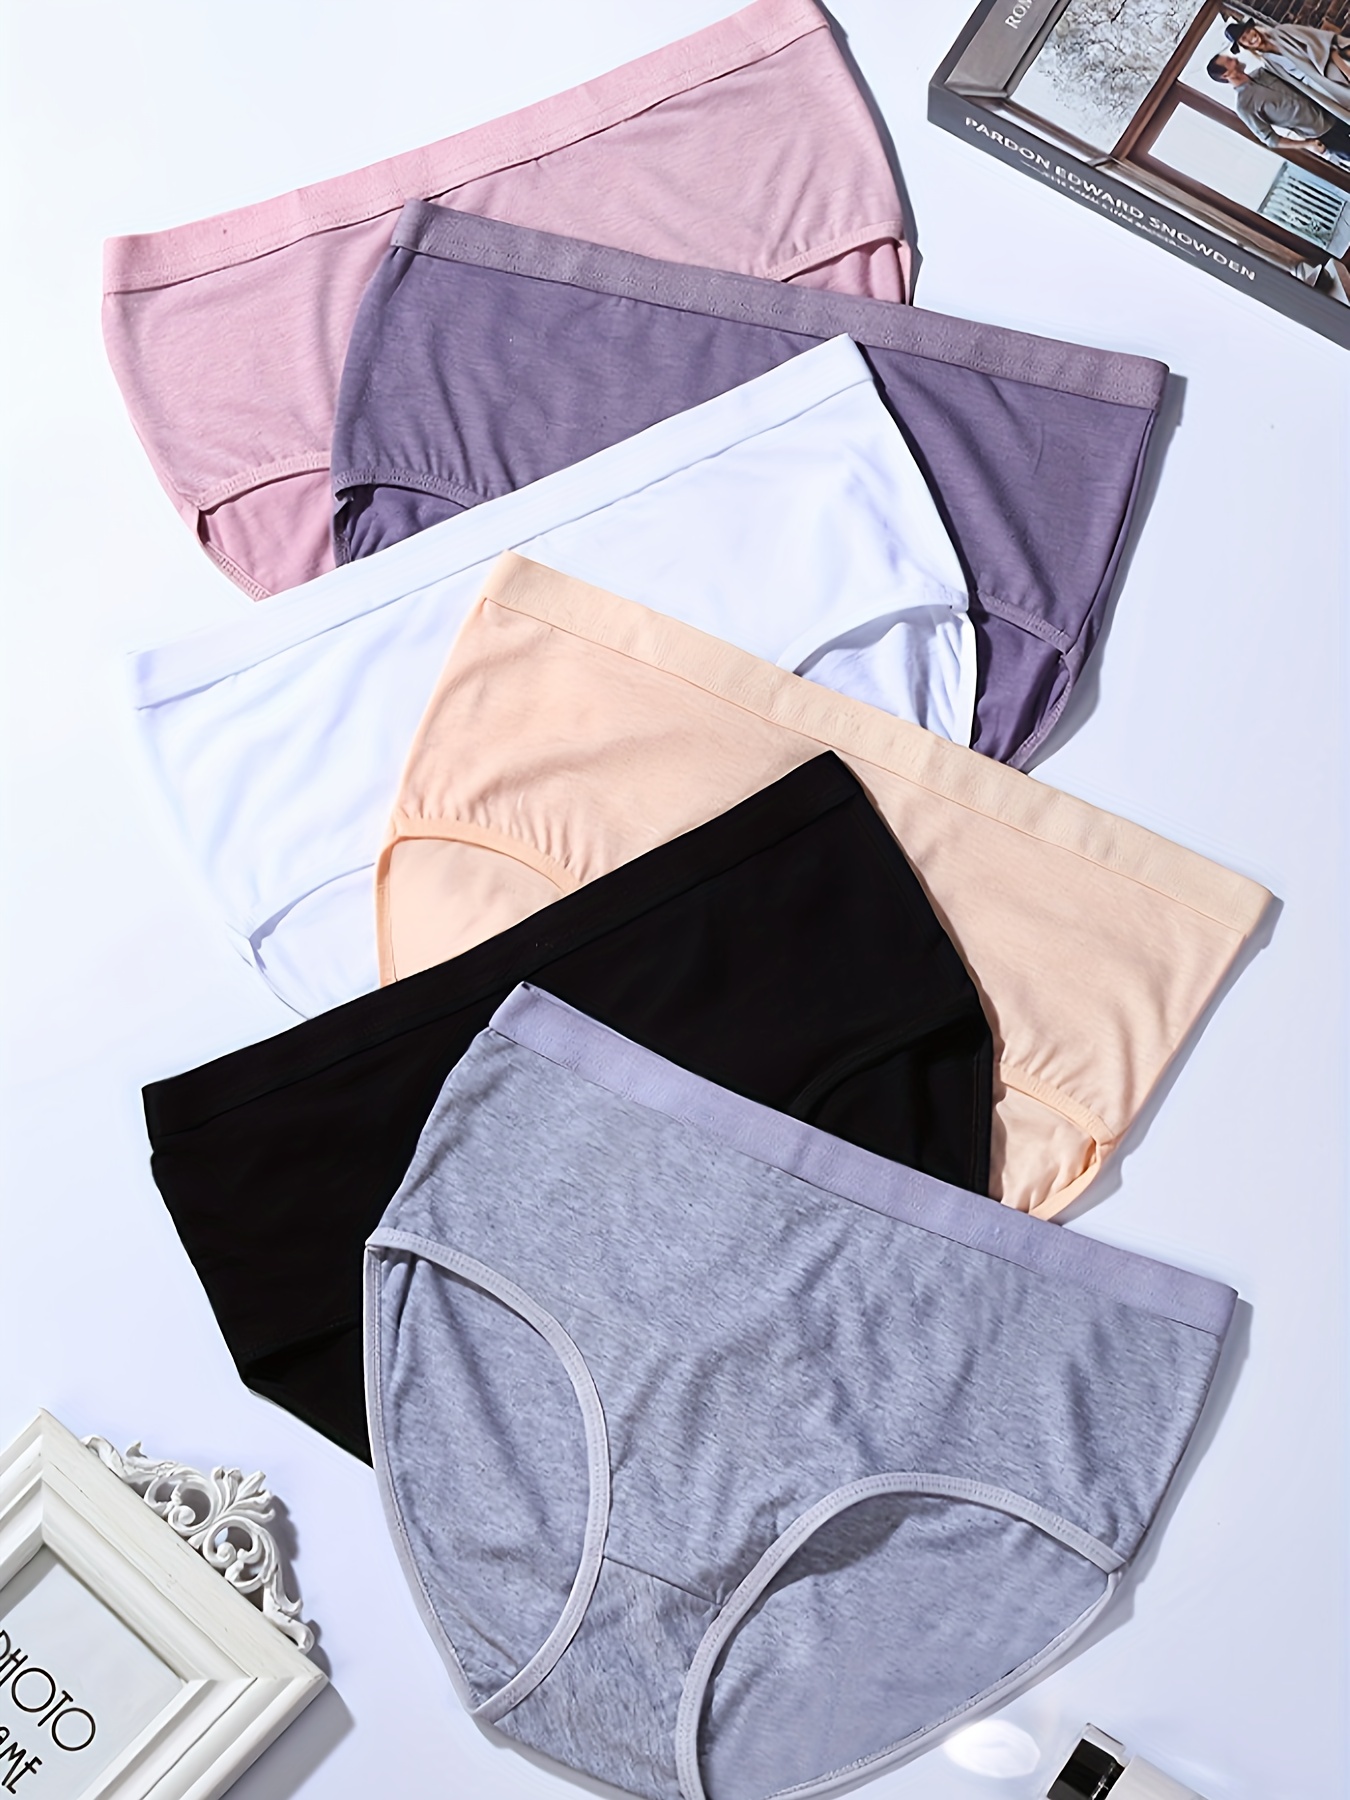 CAILECOTTON Women's Cotton Underwear Soft Breathable Ladies Briefs